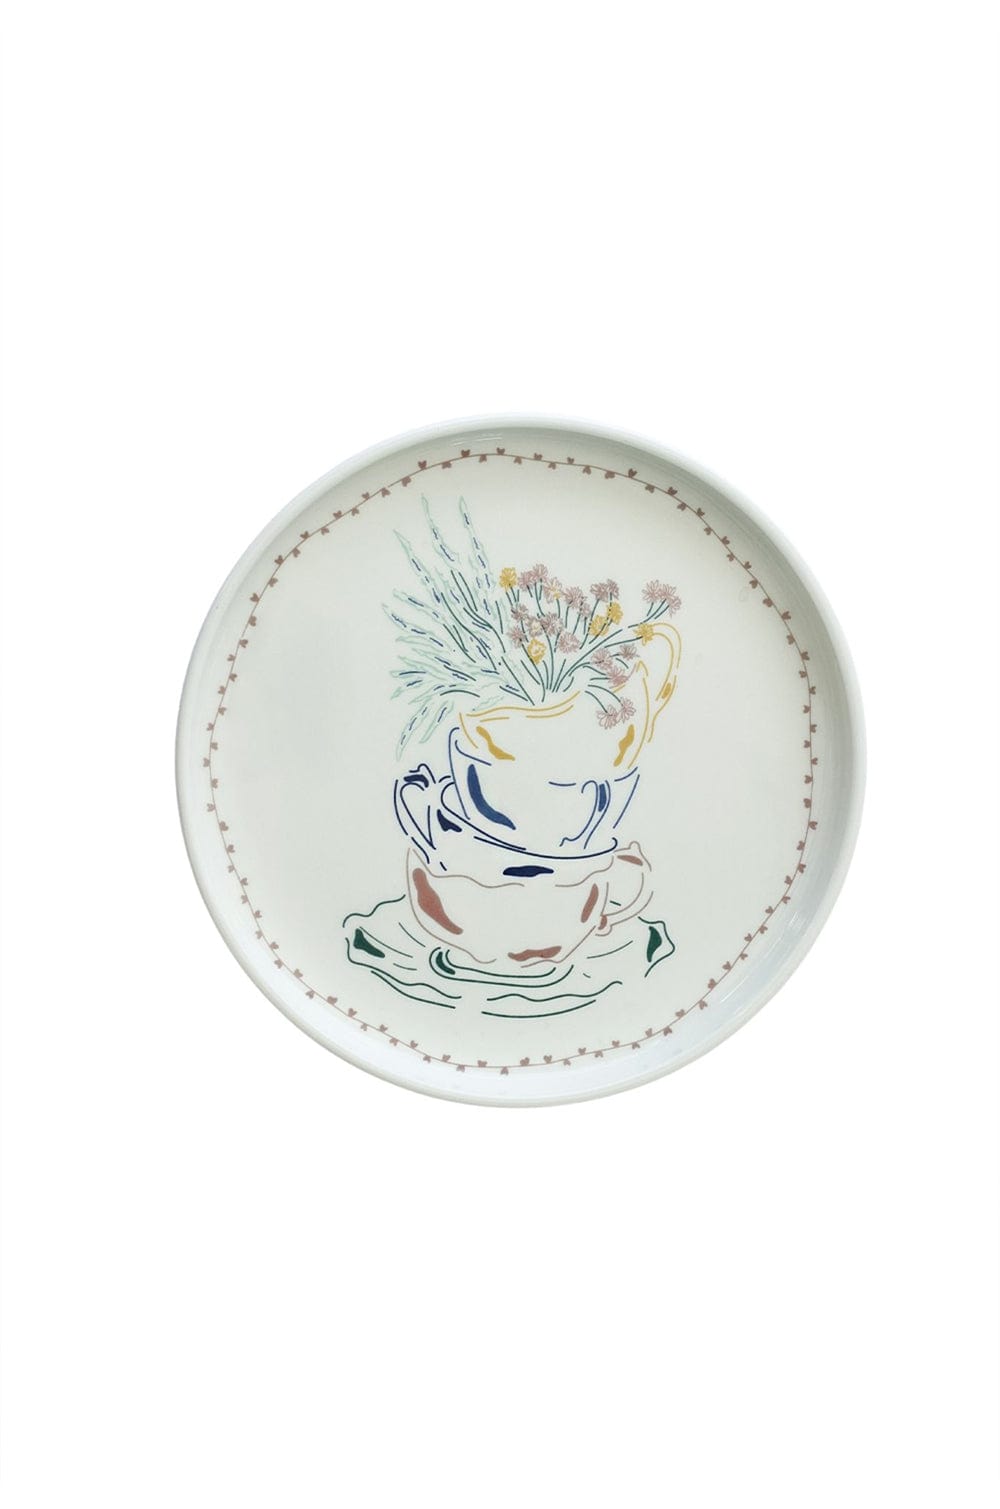 Illustration Series Wall Plate- Teacups